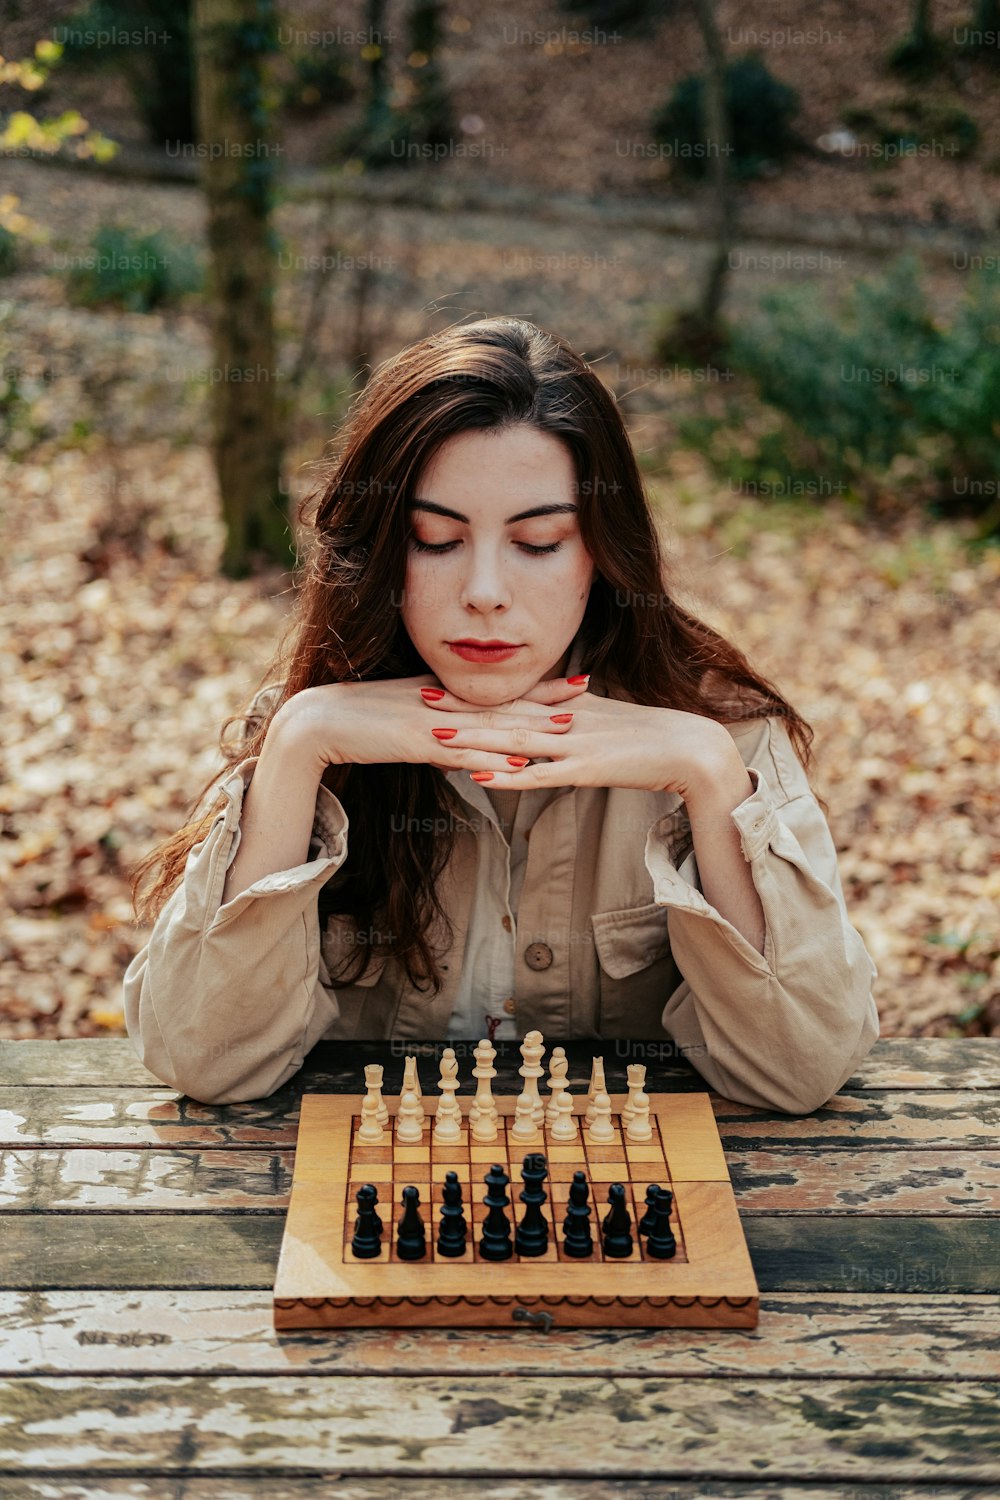 チェスセットでテーブルに座っている女性